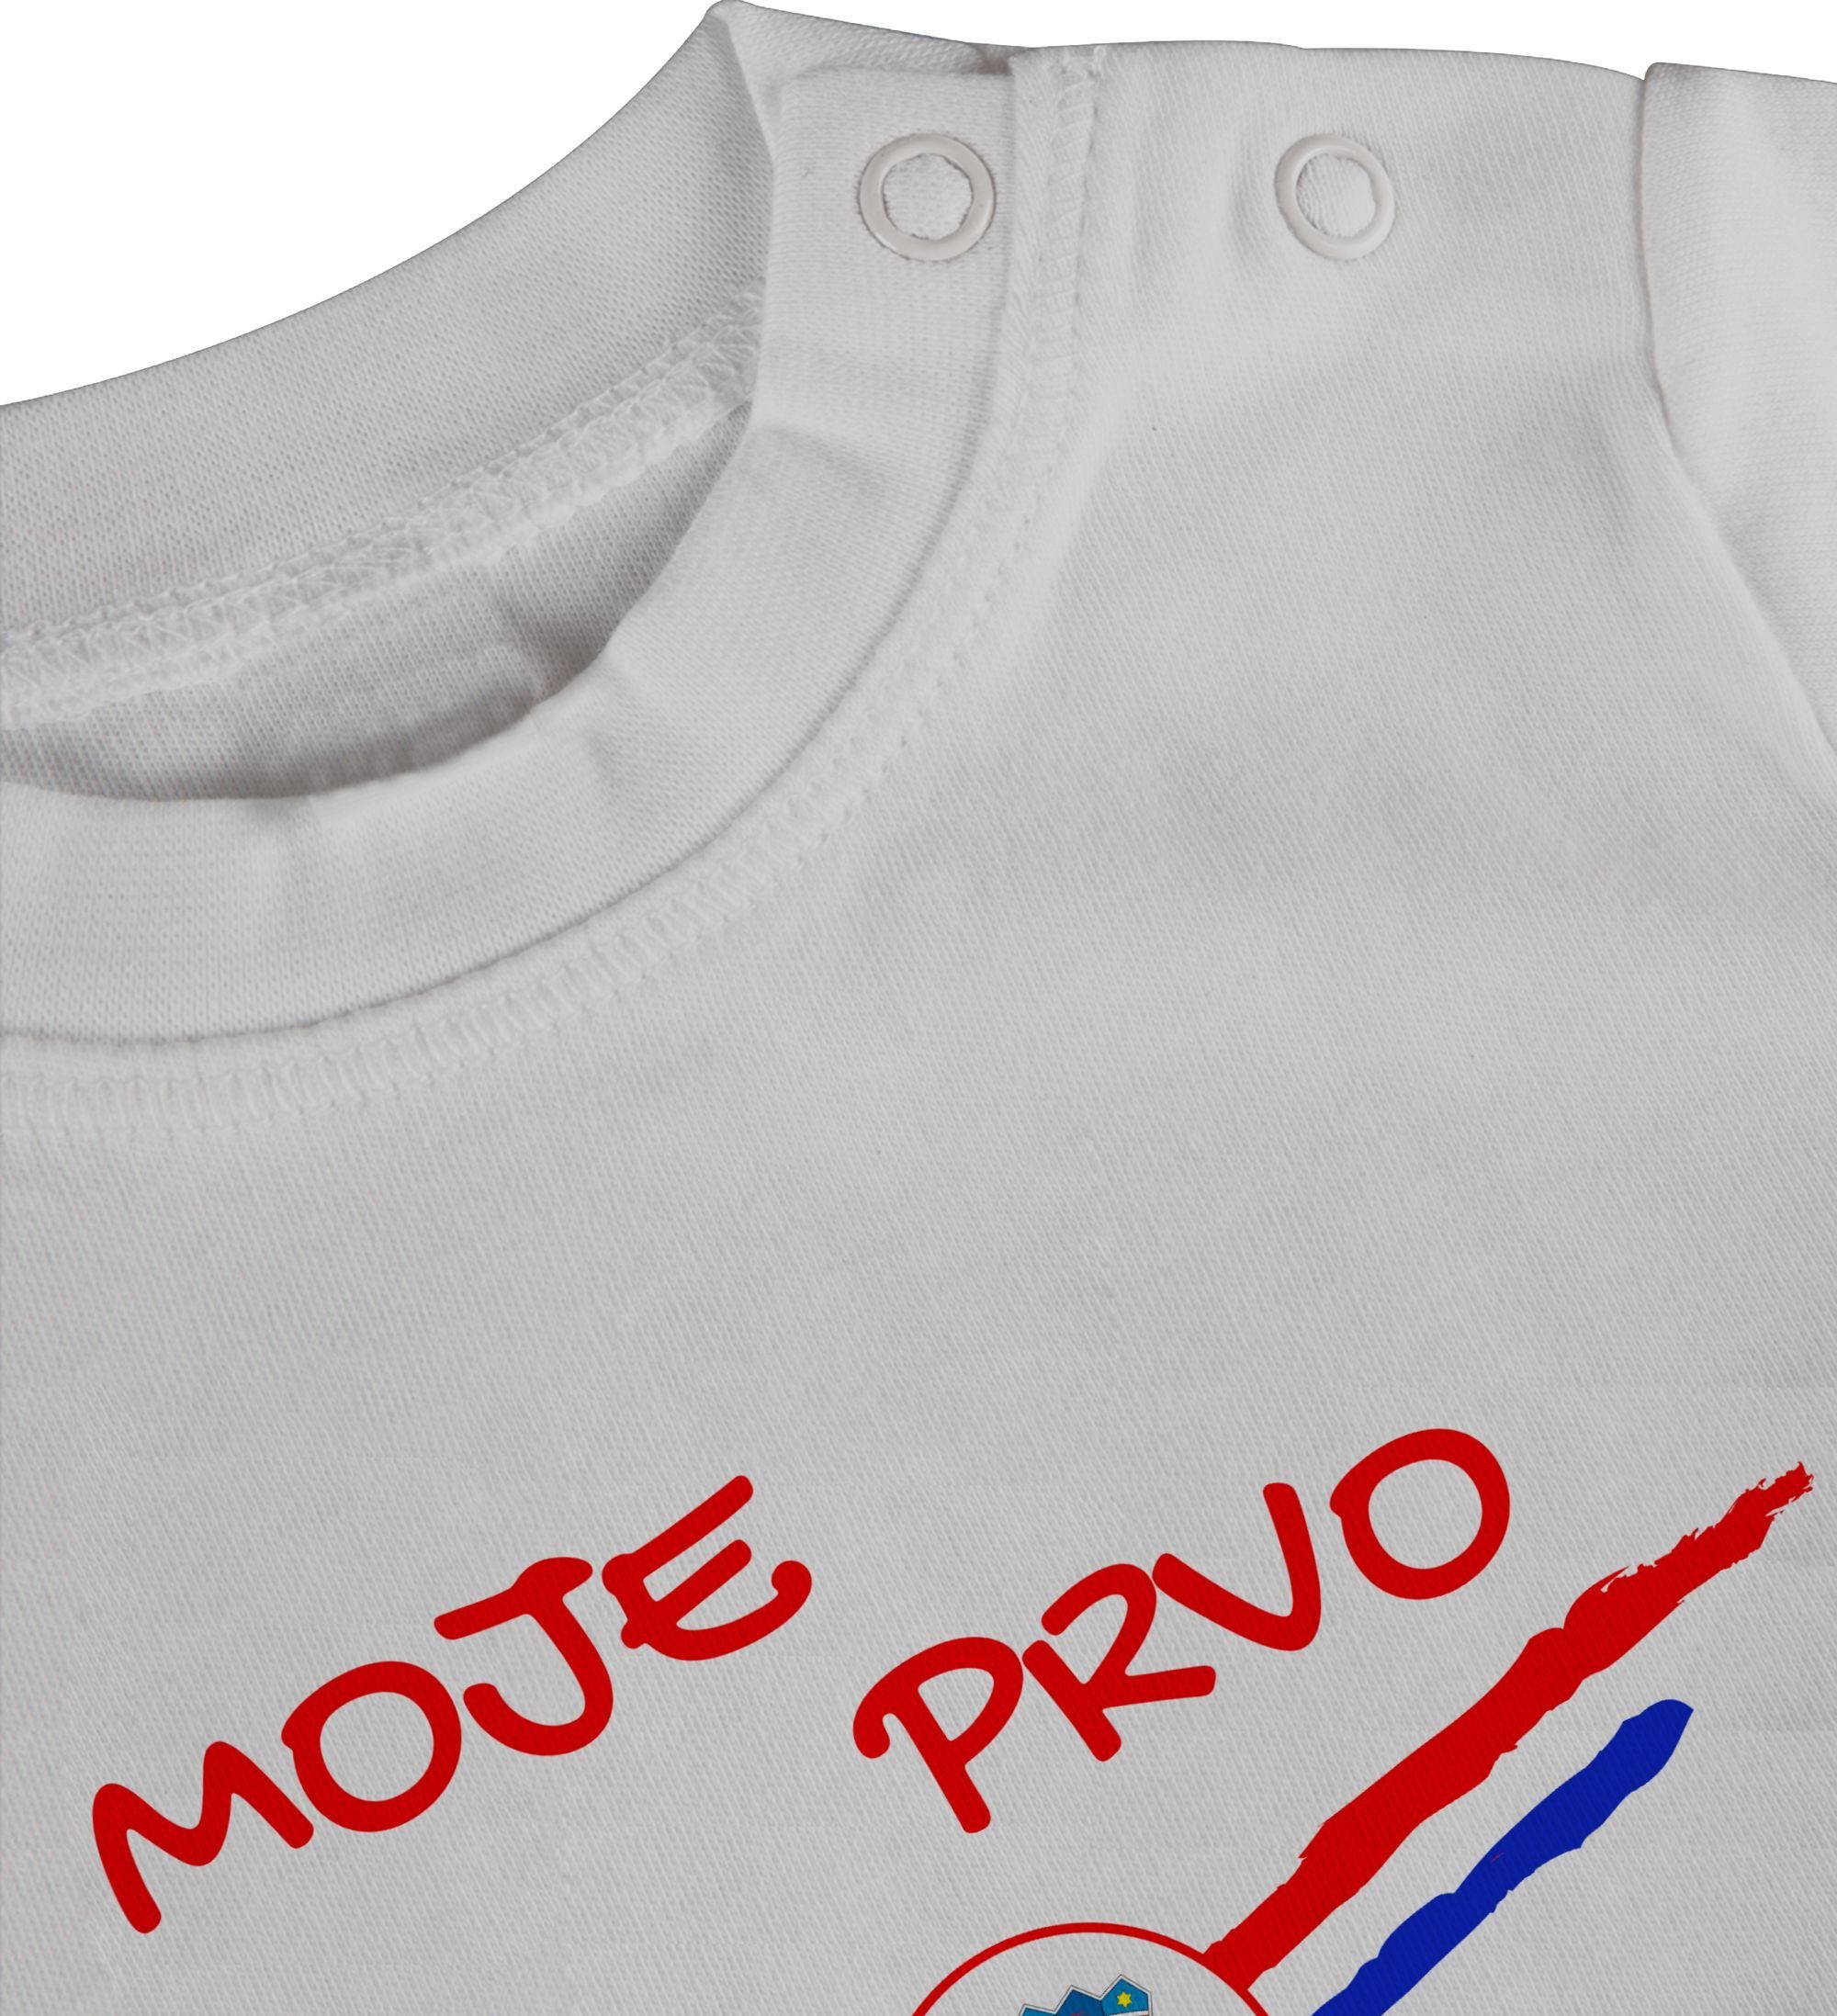 Baby erste 2024 EM Fussball Shirtracer T-Shirt kroatisch Weiß Meine WM Kroatien 1